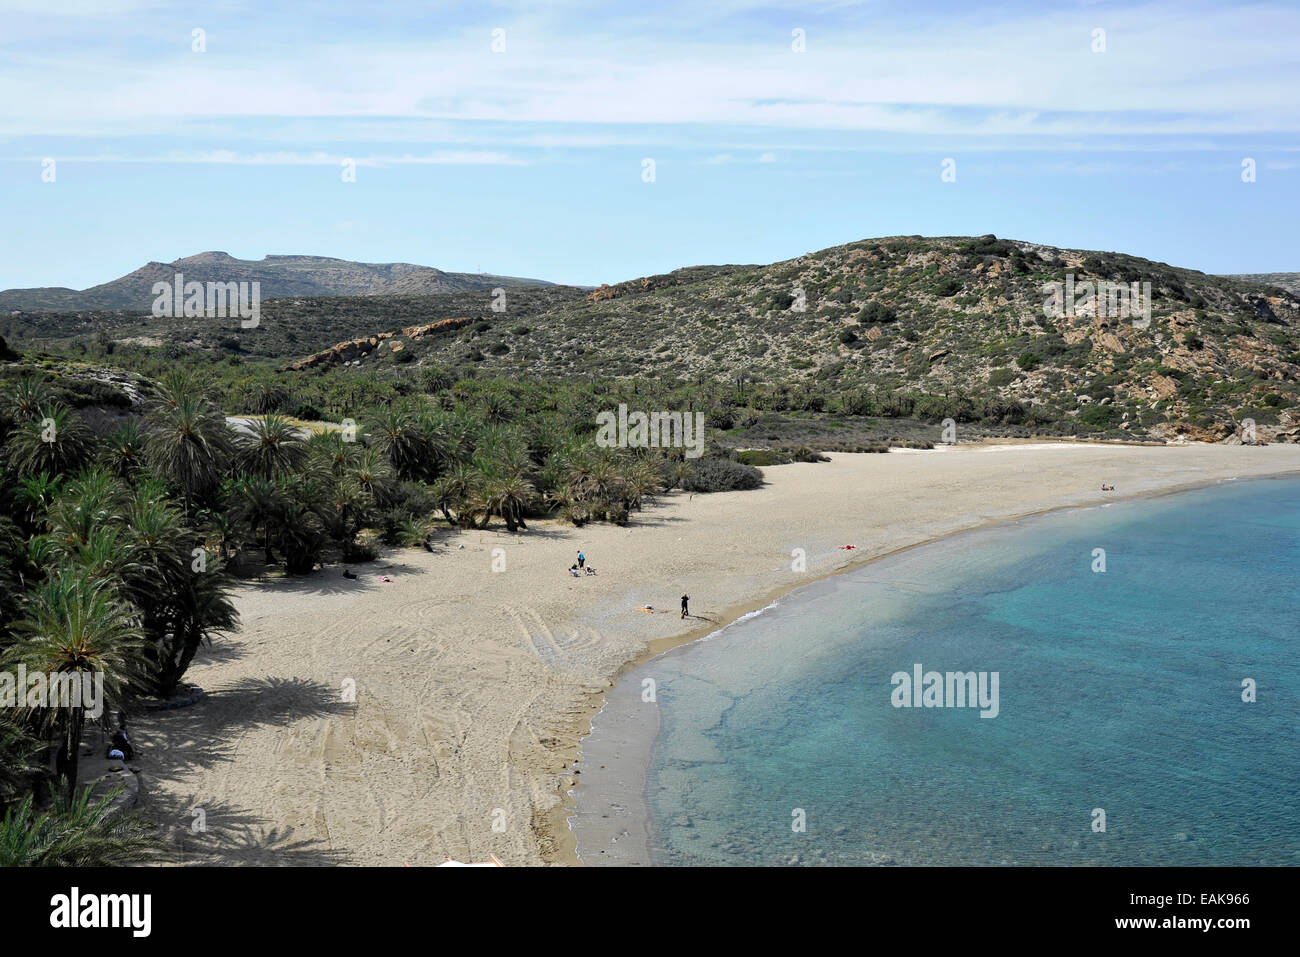 Palme Strand von Vai mit kretischen Dattelpalmen (Phoenix Theophrasti), Palmenstrand von Vai, Kreta, Griechenland Stockfoto